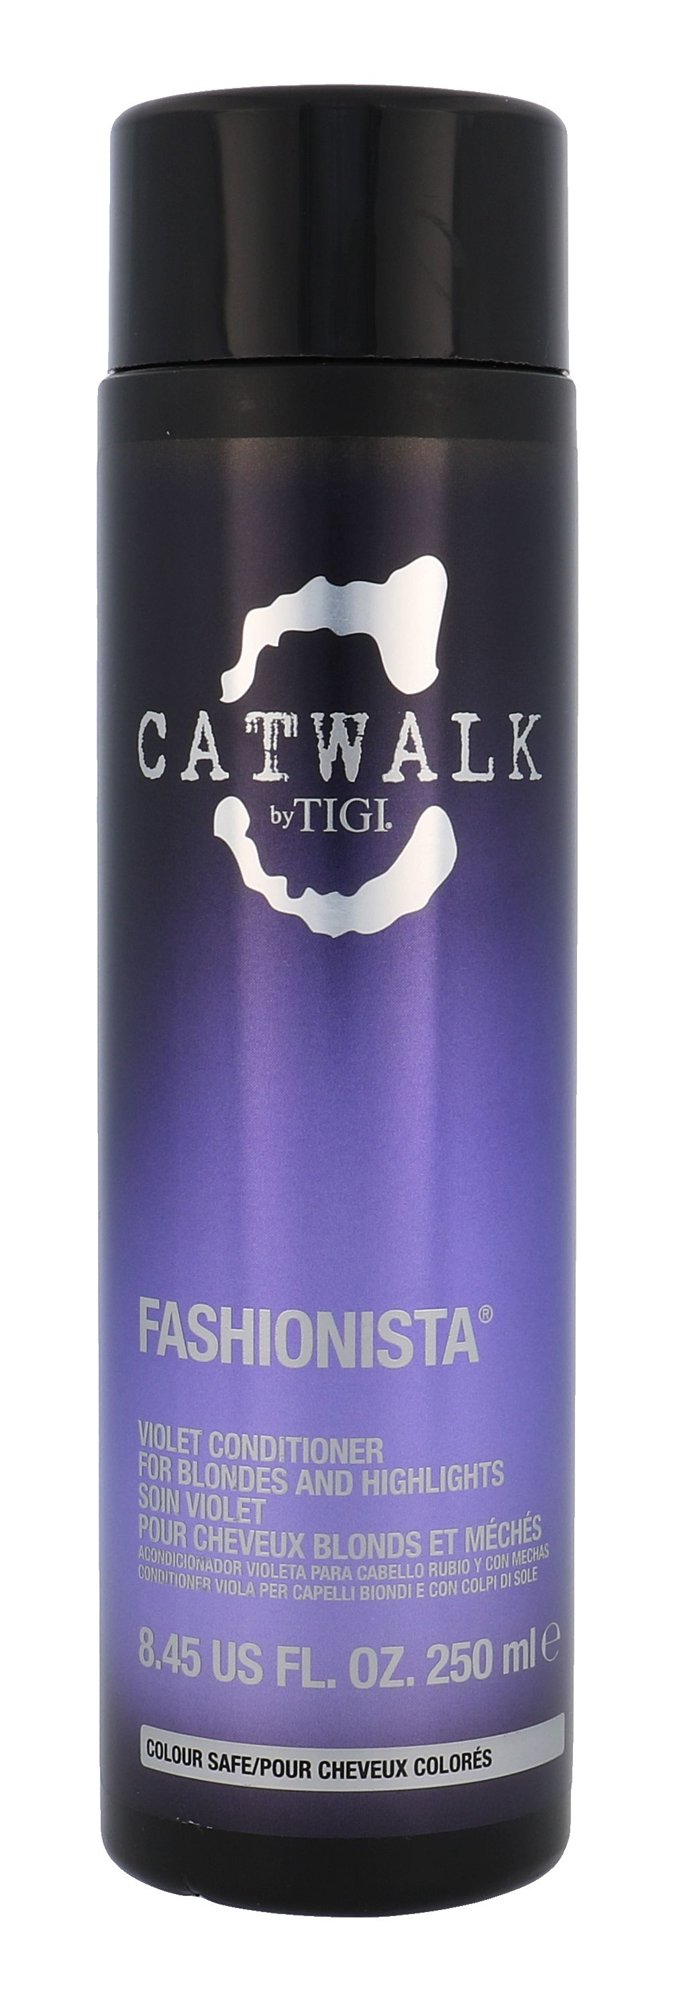 Tigi Catwalk Fashionista Violet kondicionierius